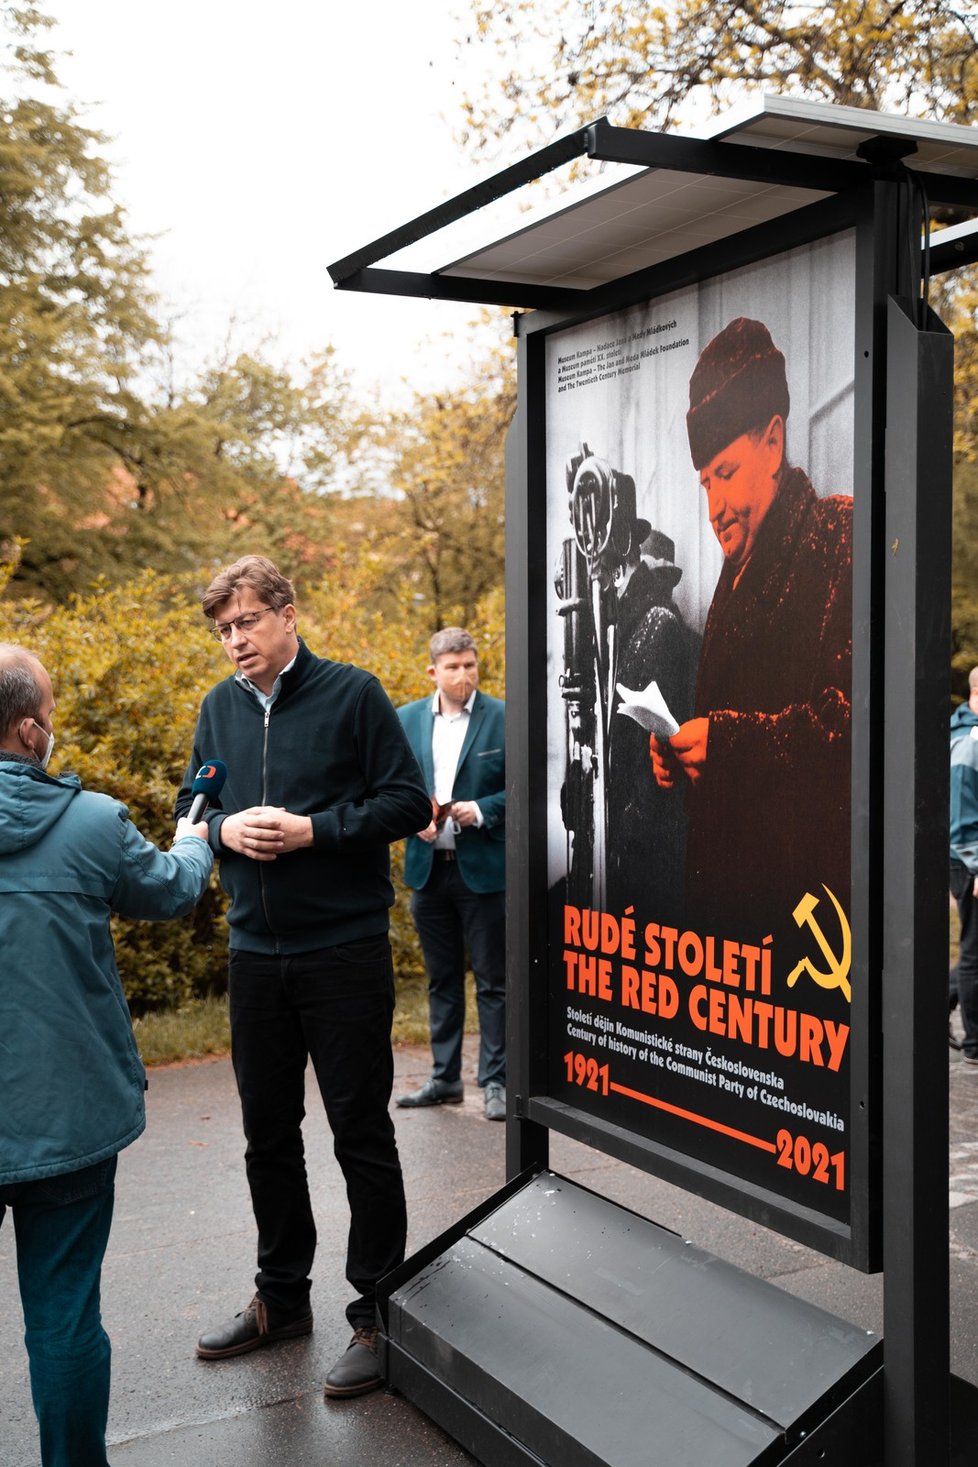 Na Kampě je k vidění výstava, která mapuje 100letý vývoj komunistické strany